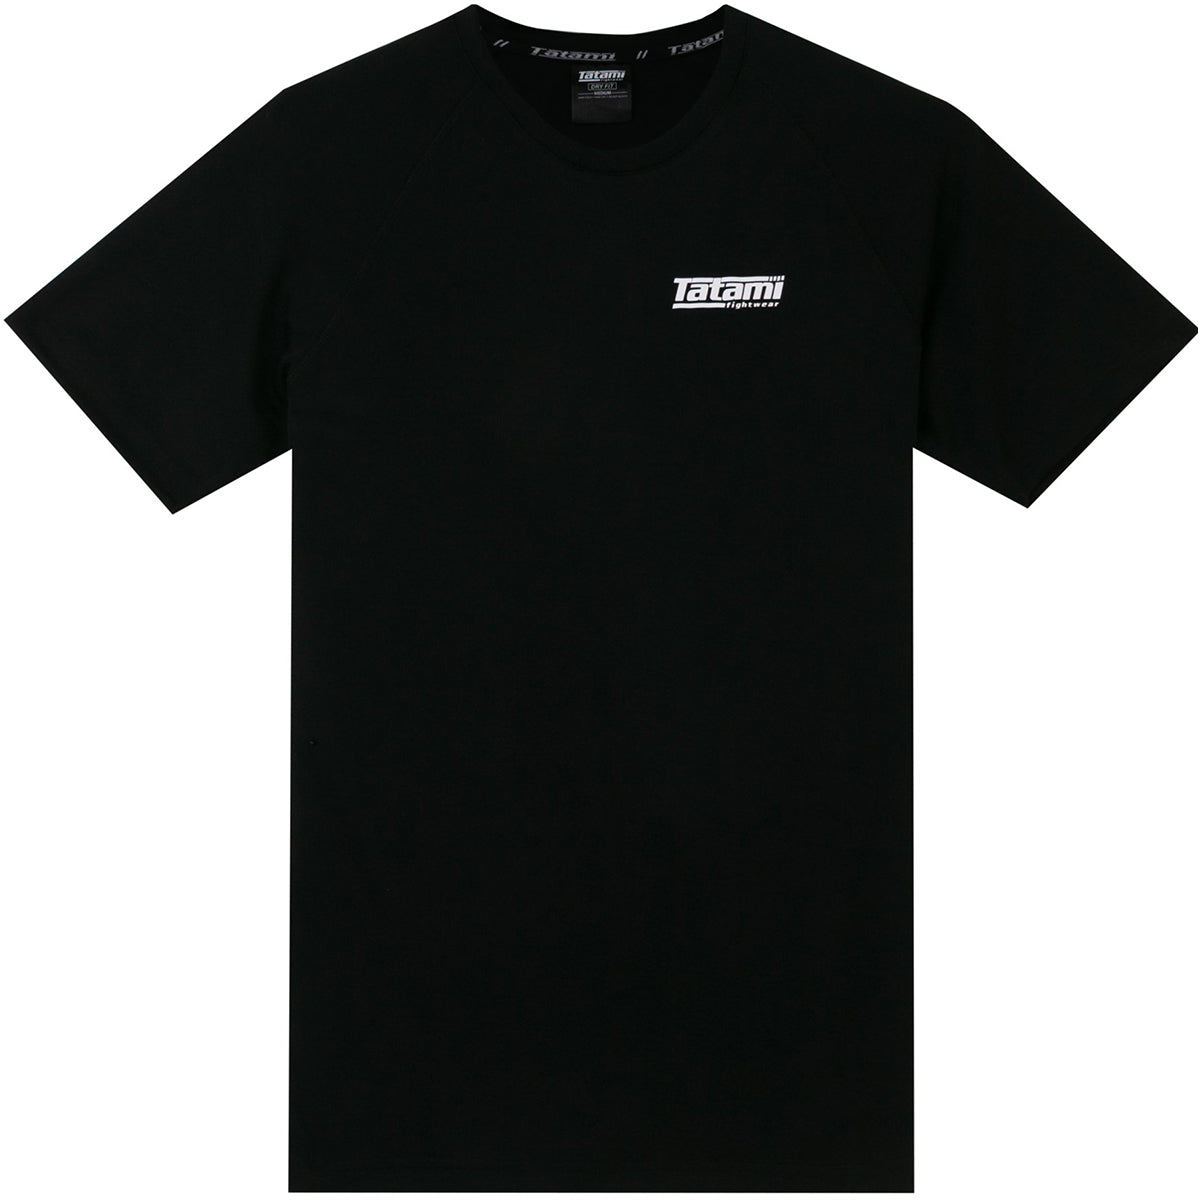 Tatami Fightwear Dry Fit T-Shirt - Black Tatami Fightwear